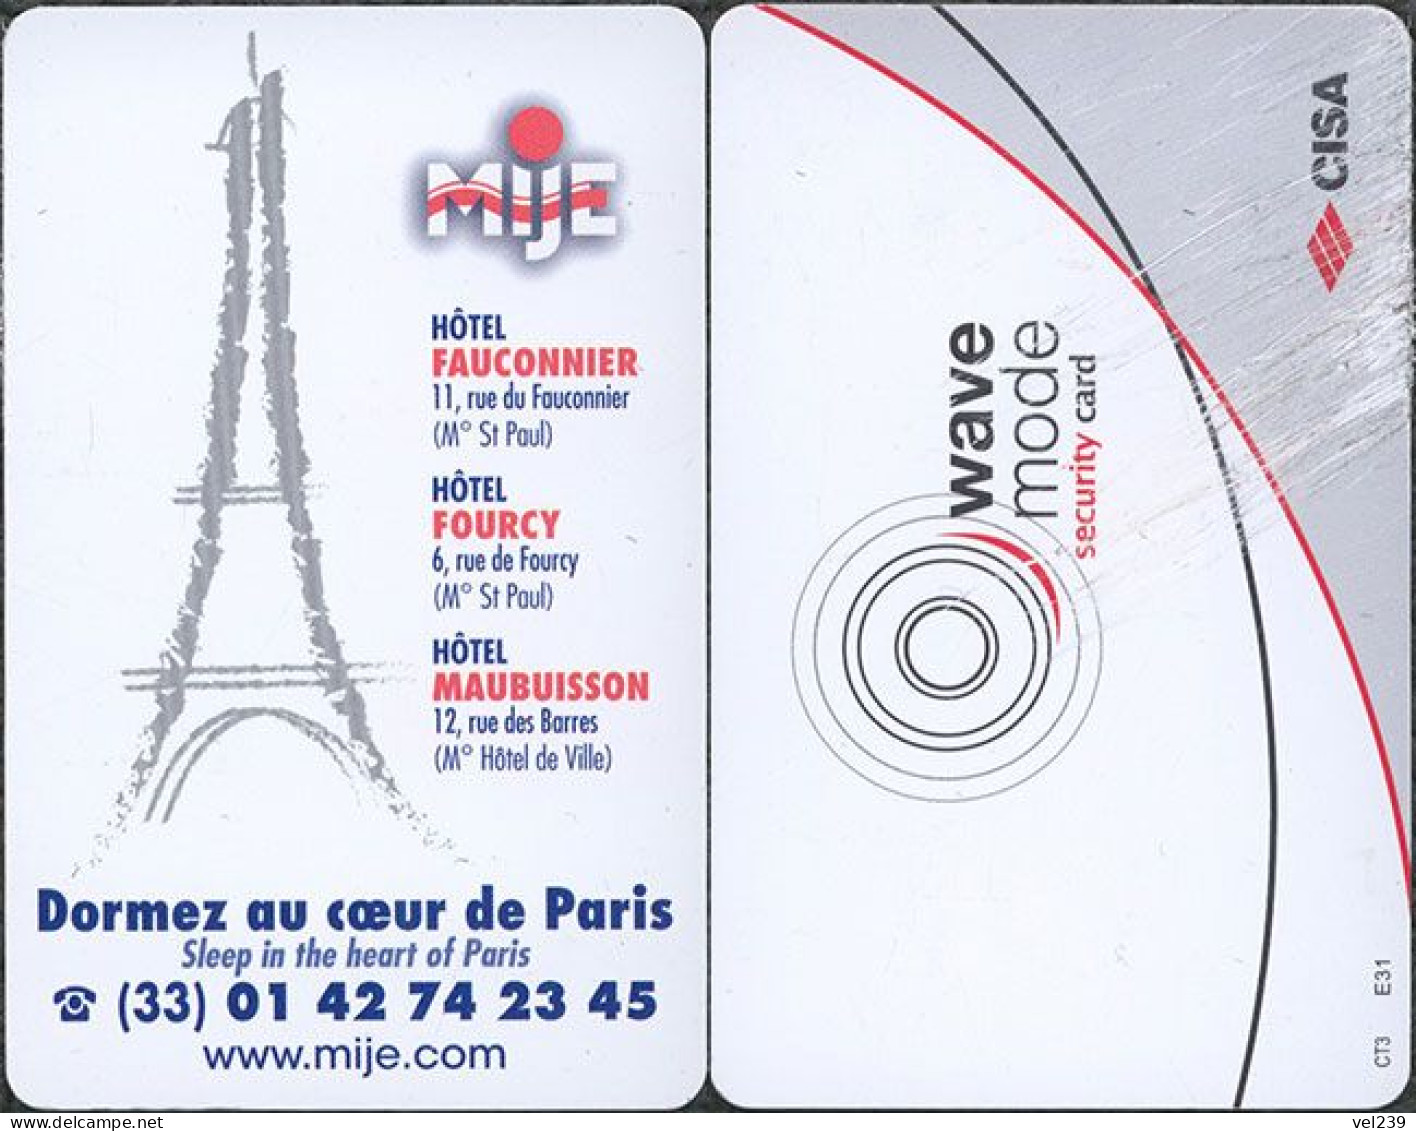 France. MIJE - Hotelsleutels (kaarten)